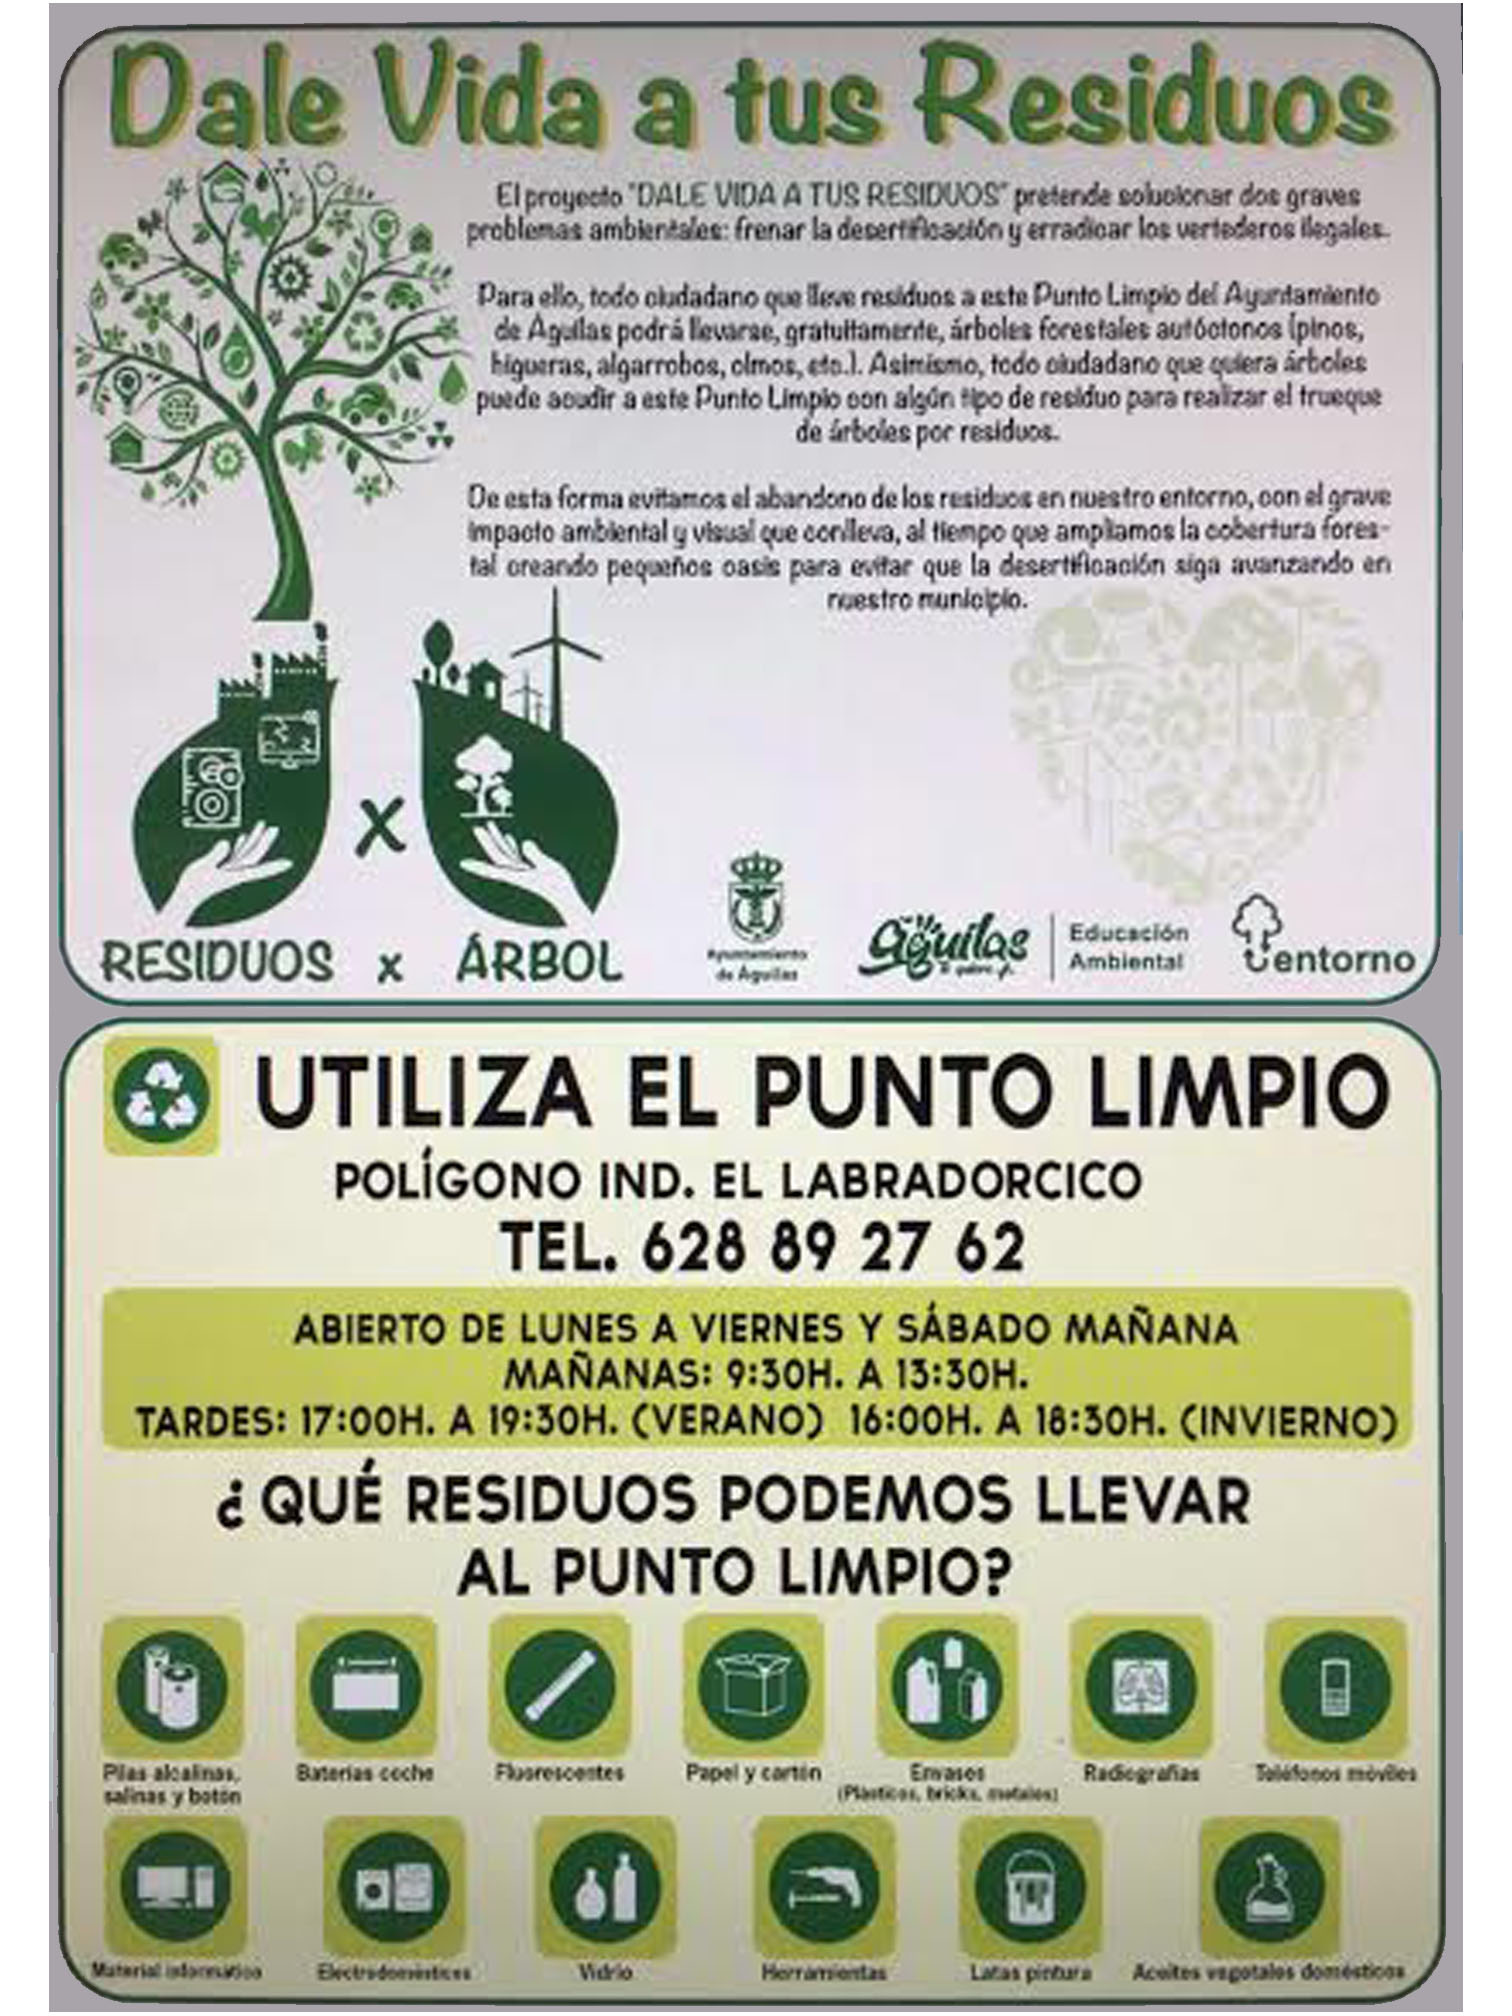 Cartel informativo sobre el Punto Limpio y la campaña 'Dale vida a tus residuos'. Imagen: Ayto. de Águilas